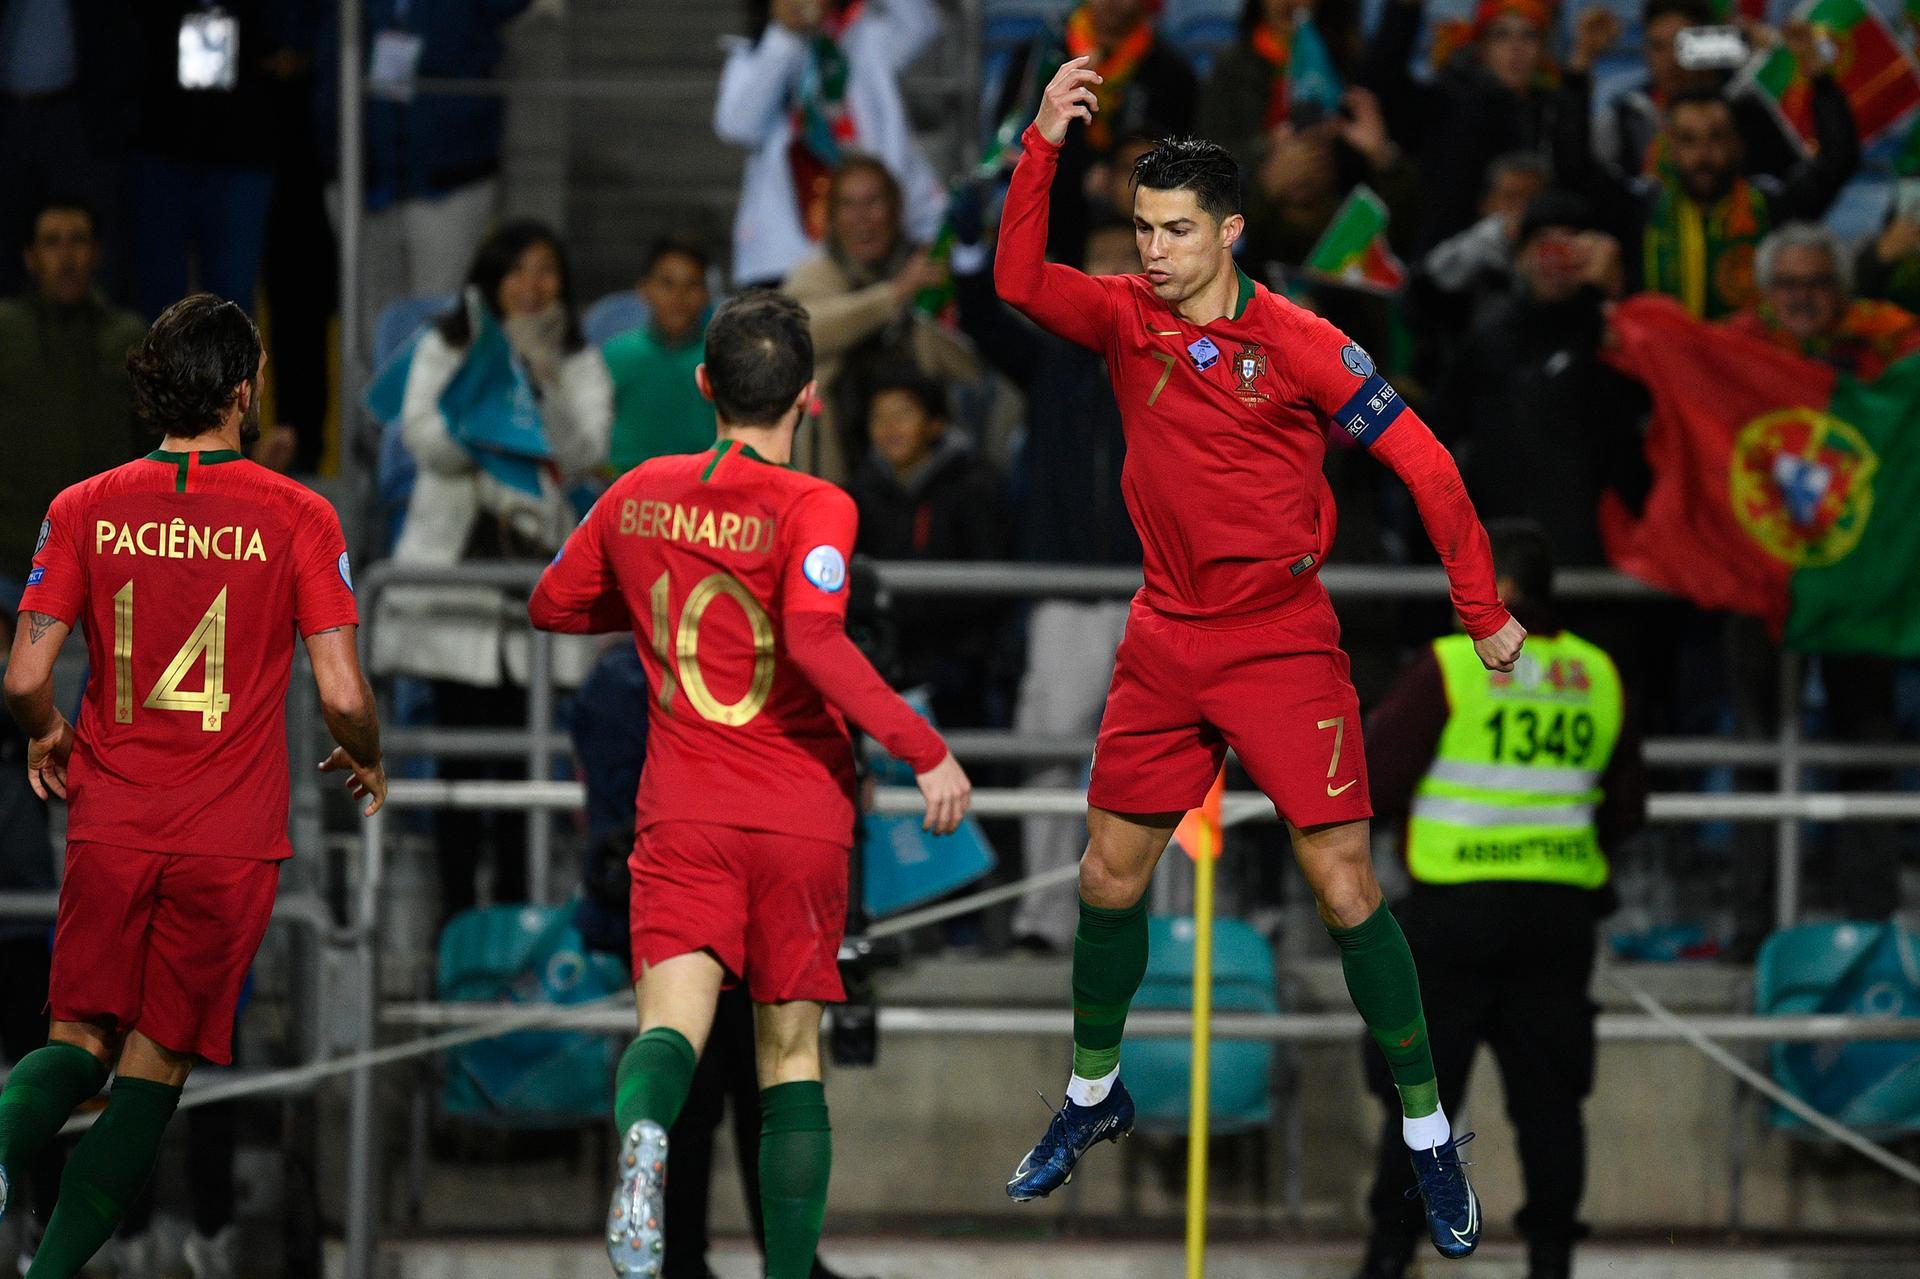 Cristiano Ronaldo goal, Lituania 1 - Portugal 3